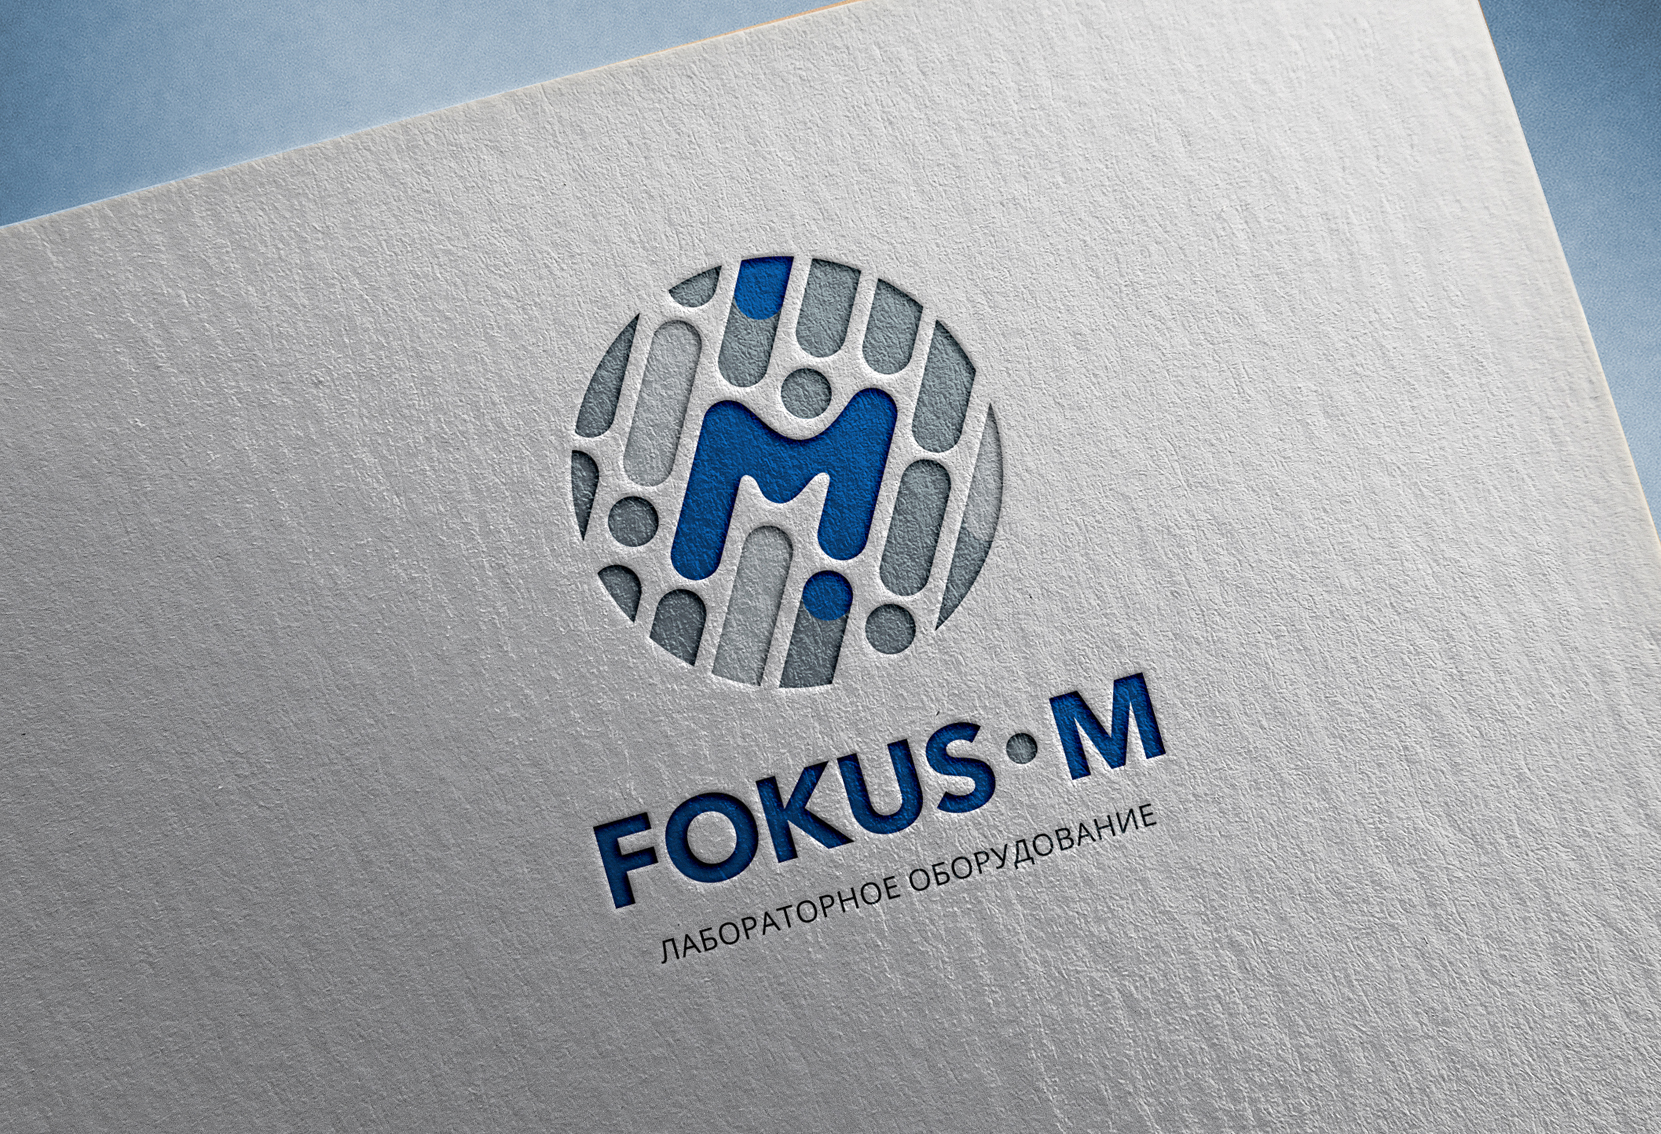  Разработка логотипа и фирменного стиля для компании Фокус-М